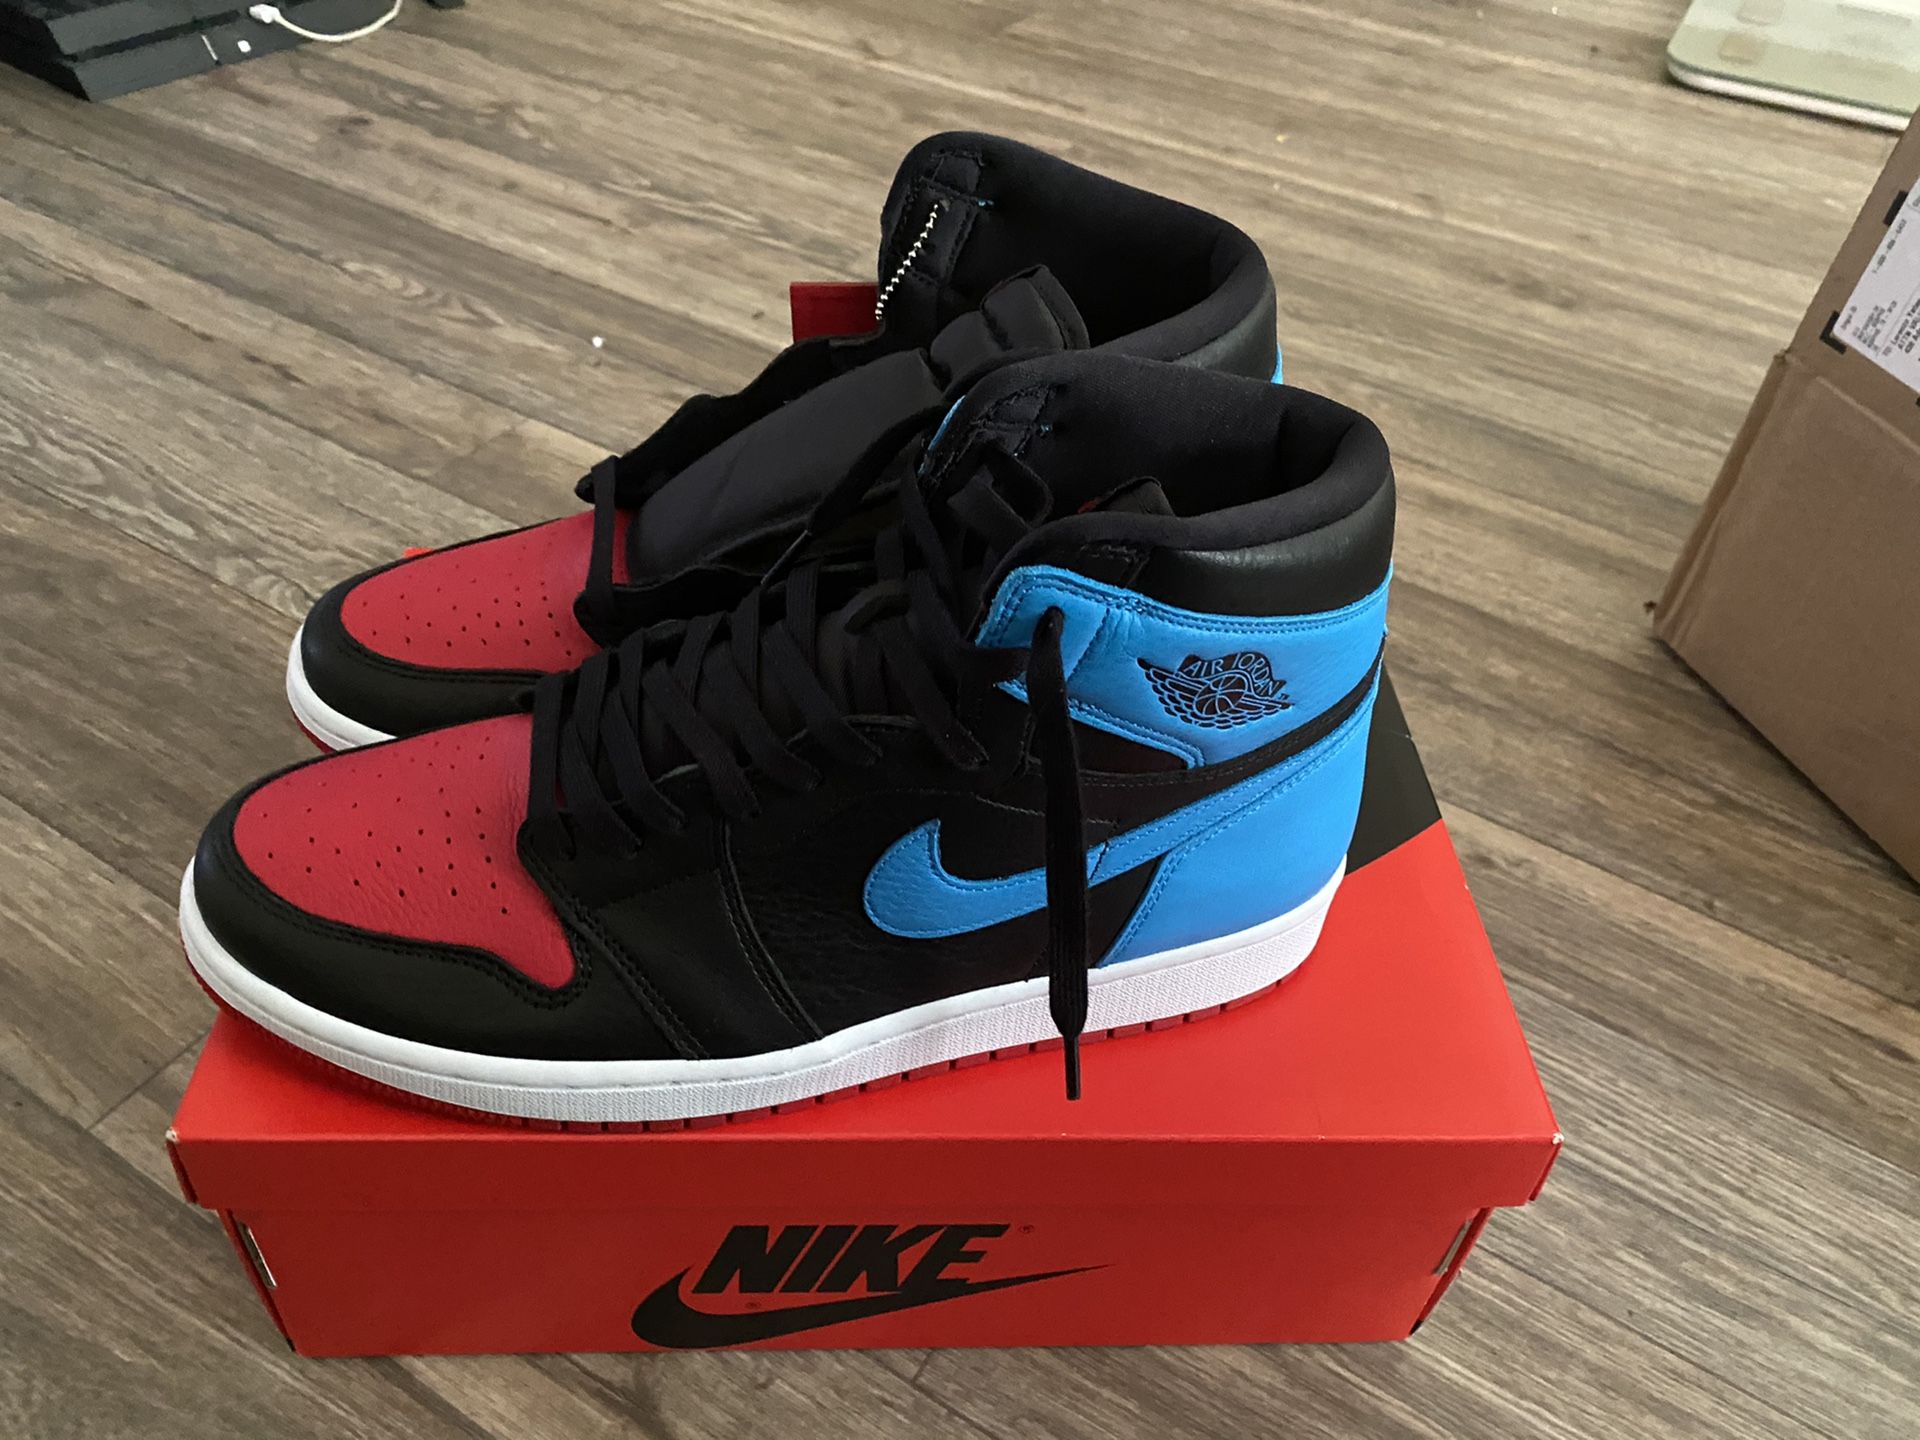 Jordan’s and Nike’s